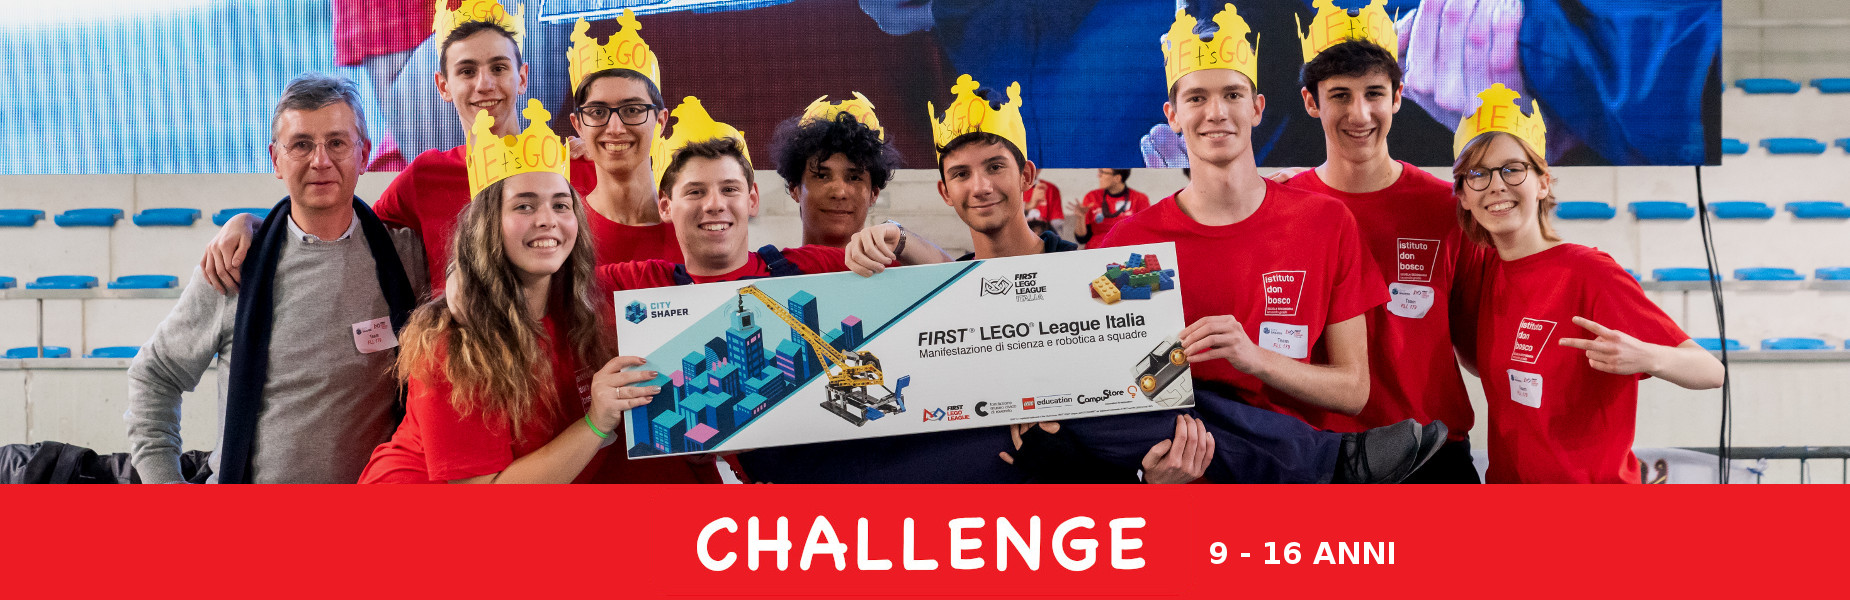 FIRST® LEGO® League è il campionato di robotica a squadre per bambini e ragazzi fino a 16 anni